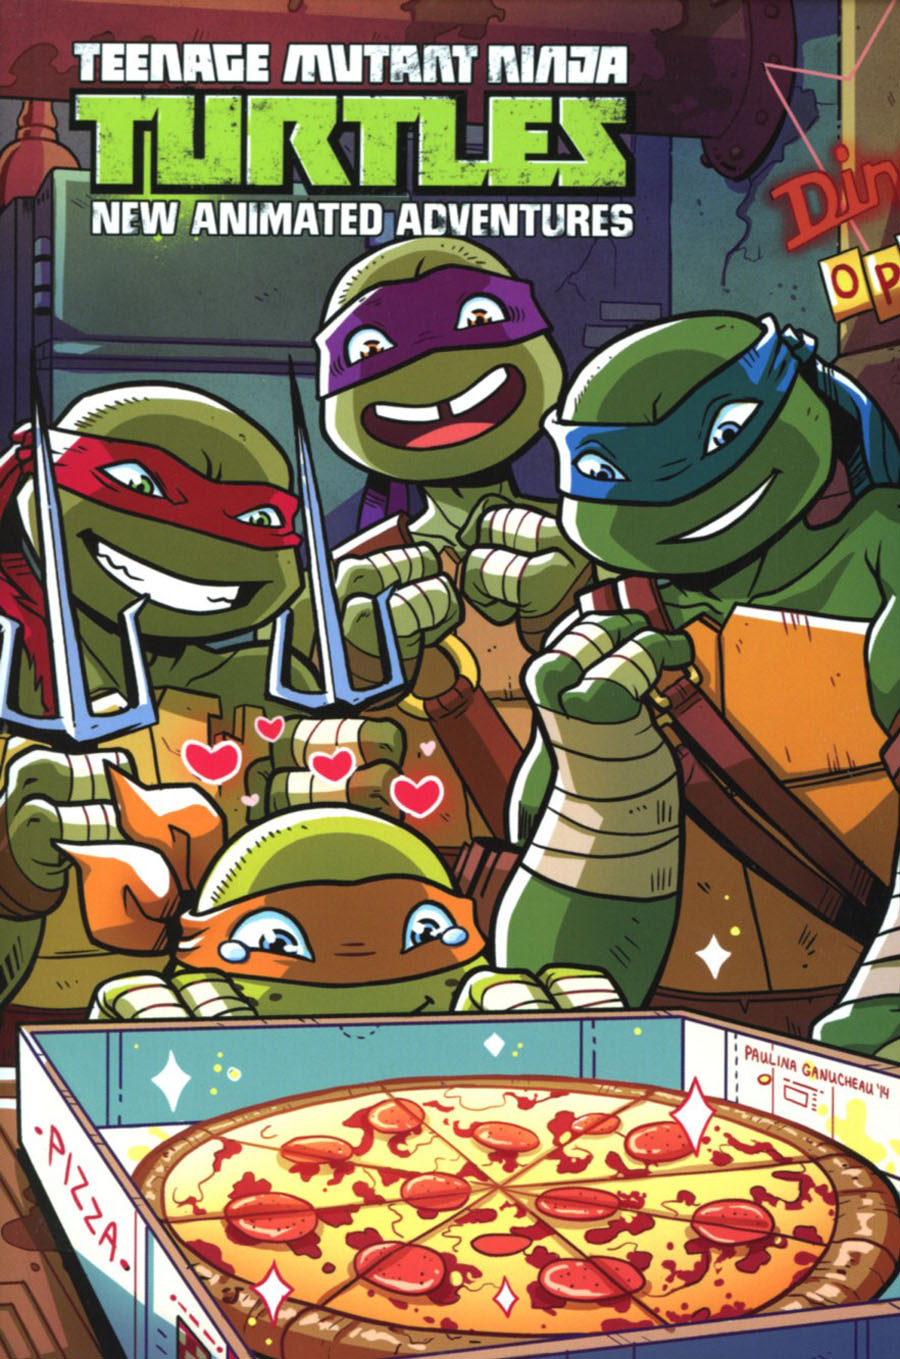 Teenage Mutant Ninja Turtles New Animated Adventures Omnibus Vol 2 TP